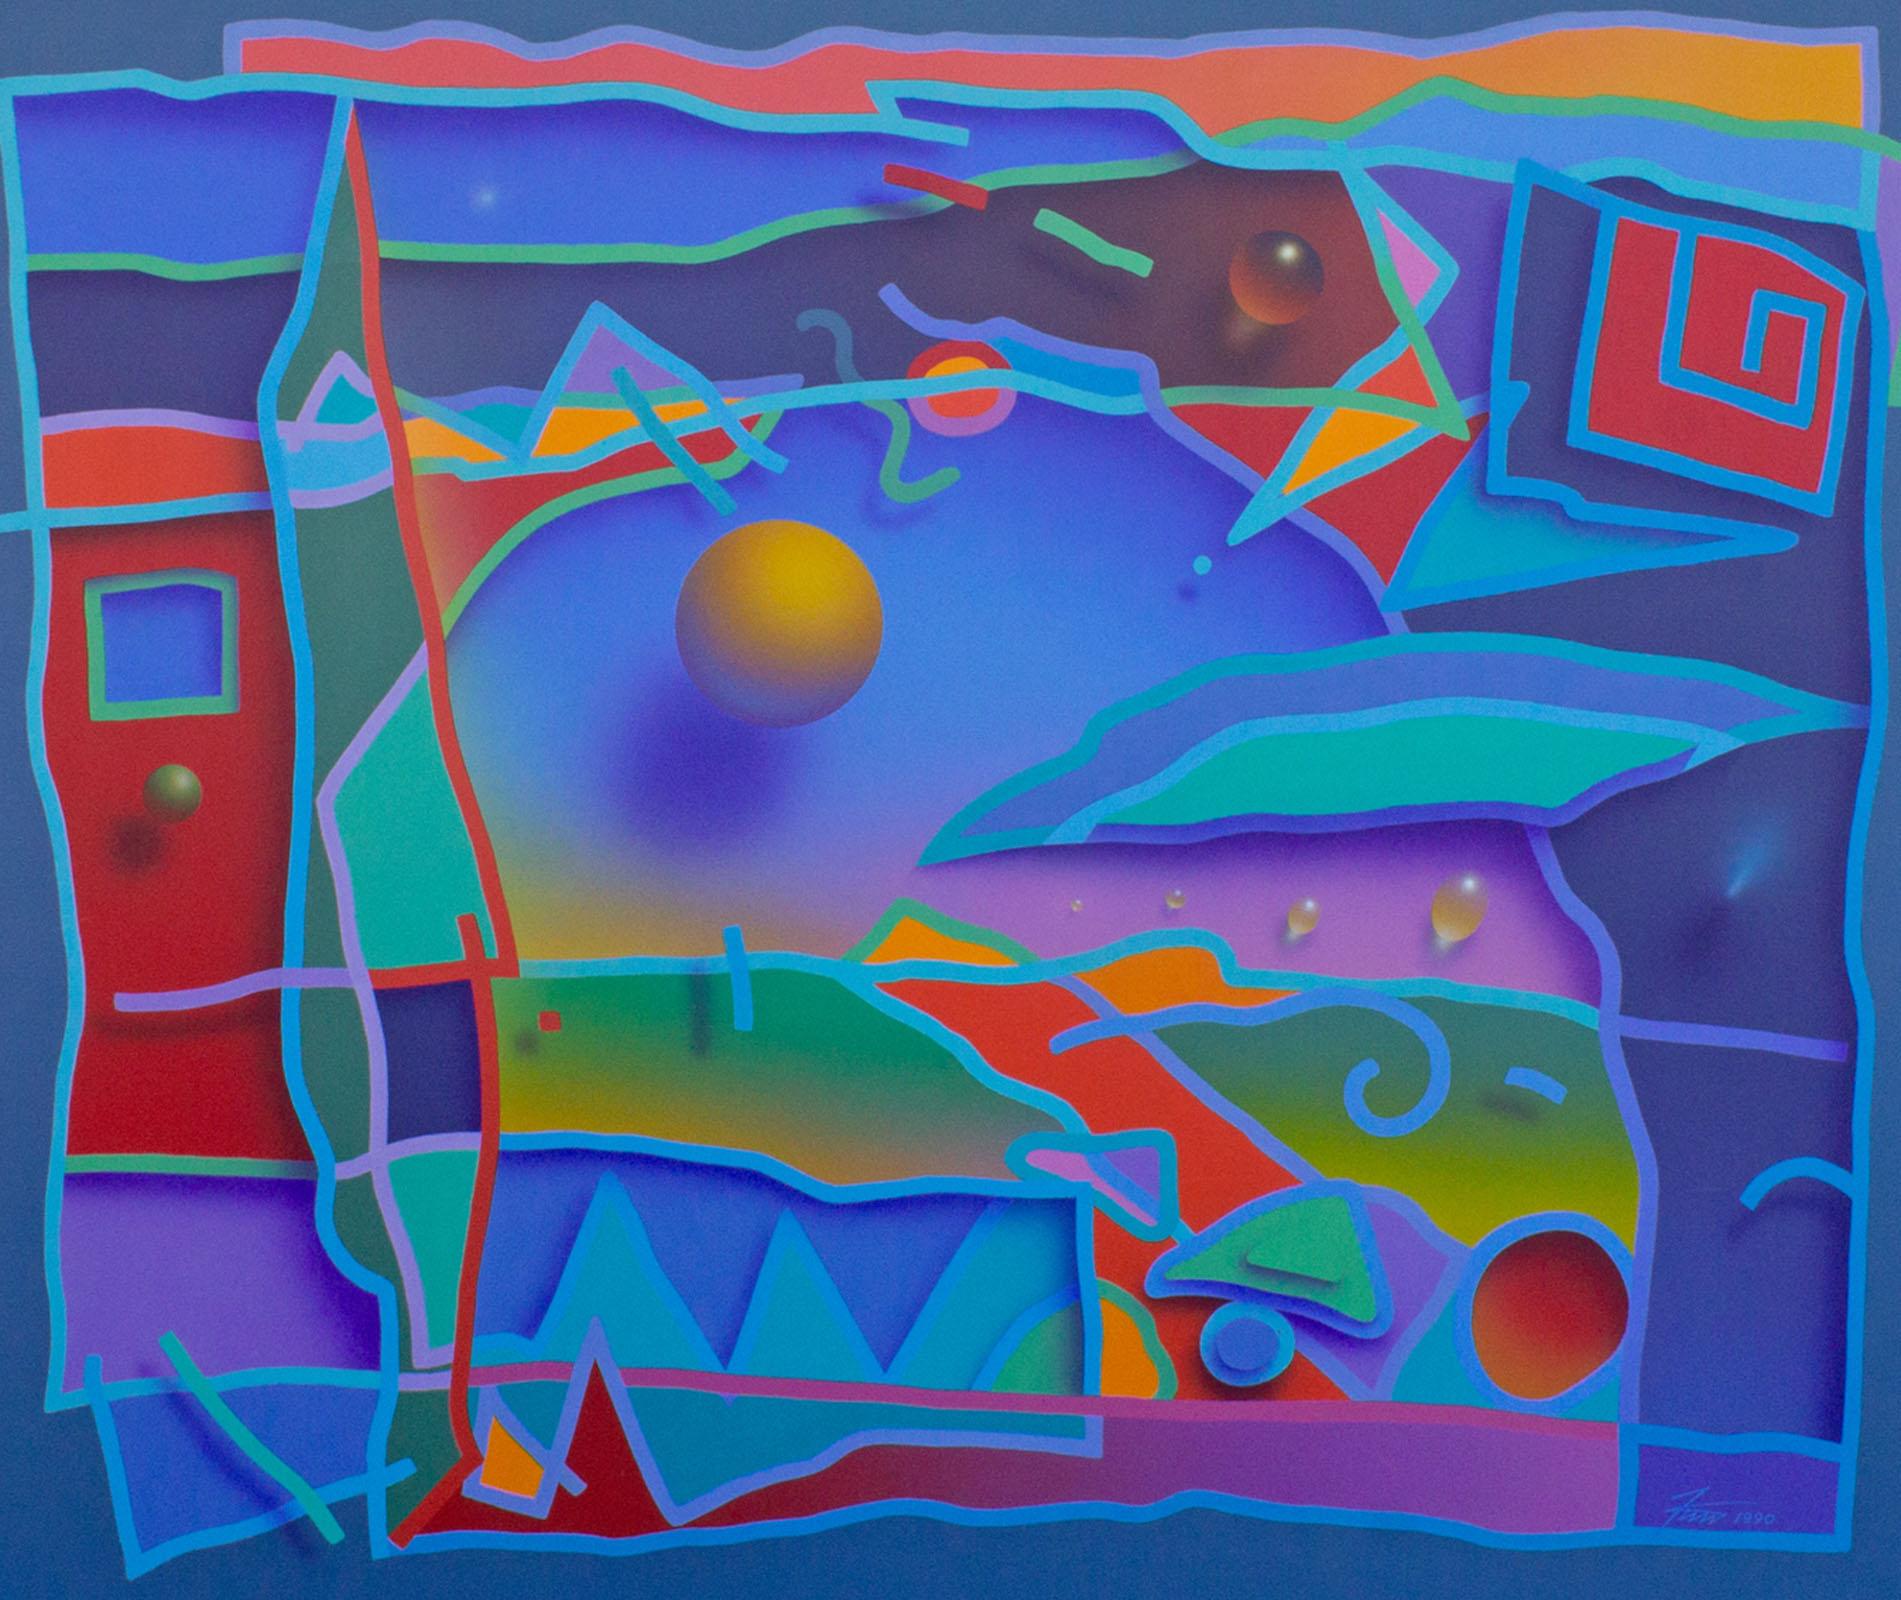 Peinture acrylique sur toile de 1990 de l'artiste américain James Wille Faust (né en 1949). Cette œuvre vibrante présente une superposition de formes et de motifs peints de manière à créer une illusion d'optique d'objets flottants et de